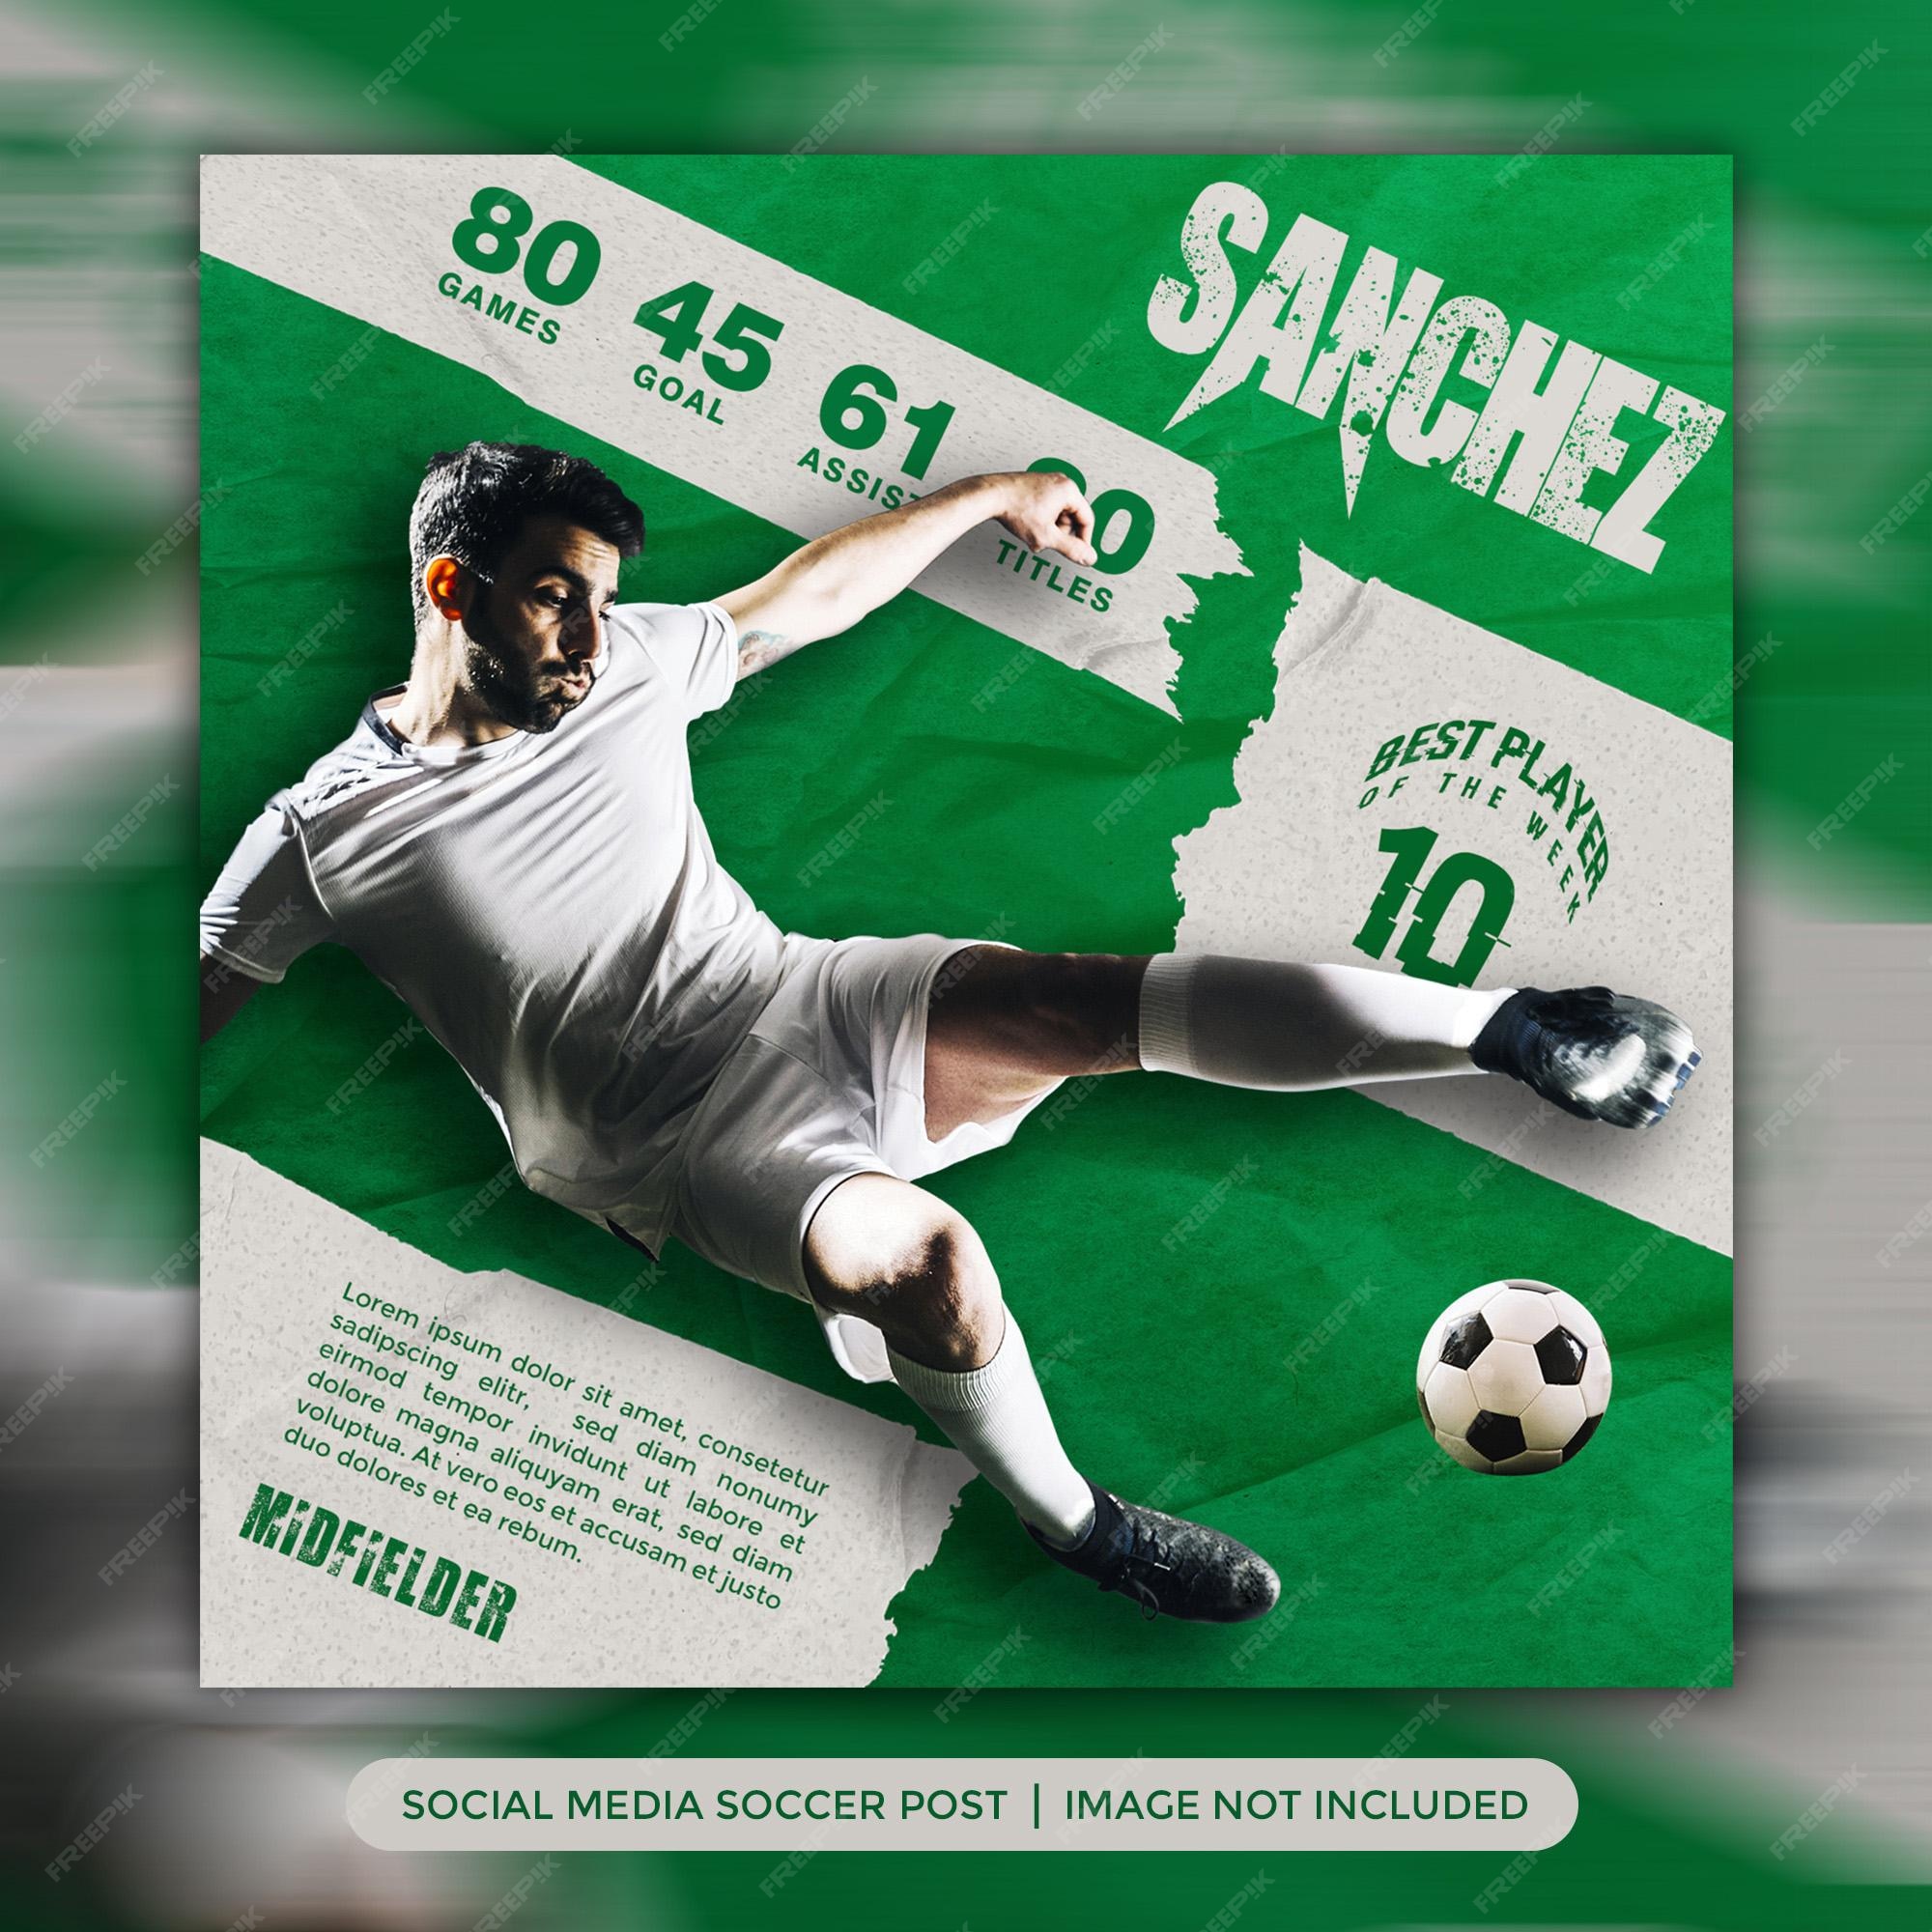 Mejor jugador de fútbol publicación en redes sociales o banner web diseño plantilla de fútbol fondo verde | Archivo PSD